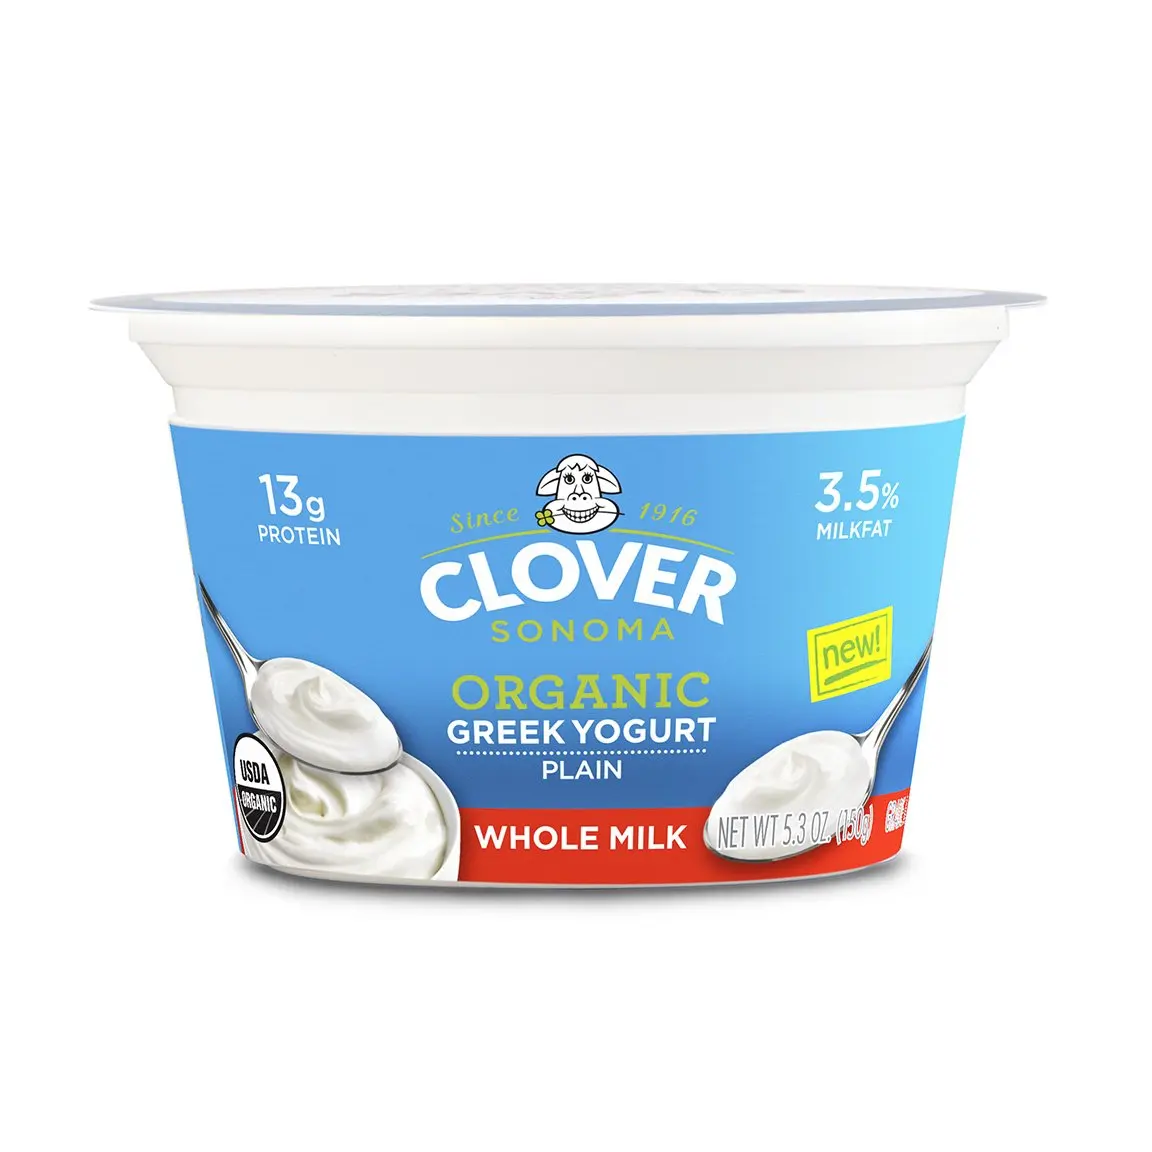 Greek yogurt. Греческий йогурт. Греческий йогурт 5%. Йогурт греческий протеиновый. Нежирный греческий йогурт.